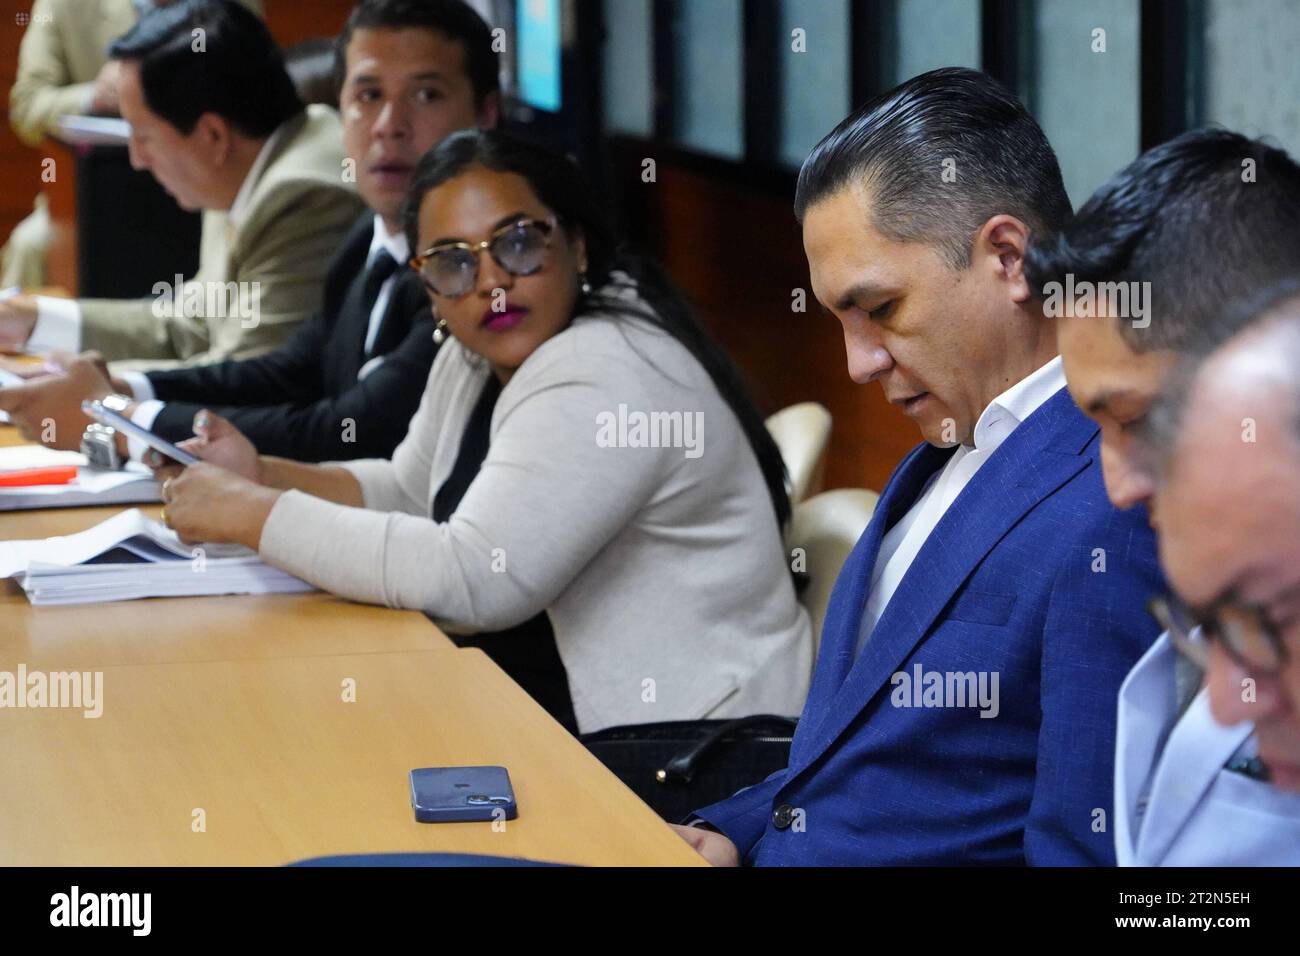 AUDIENCIA VOCALES JUDICATURA TERAN Quito 20 de octubre del 2023. El Juez Luis Rivera suspendio la audiencia de formulacion de cargos en el caso vocales del Consejo de la Judicatura. Wilman Teran comparecio a la Audiencia API/DANIEL MOLINEROS Quito Pichincha Ecuador CLJ-AUDIENCIAVOCALESJUDICATURATERAN-d11dbe5db5beae2f849e6694d82a4c12 *** AUDIENCE VOCALS JUDICATURATE TERAN Quito October 20, 2023 Judge Luis Rivera suspended the arraignment hearing in the case of Judiciary Council members Wilman Teran appeared at the hearing API DANIEL MOLINEROS Quito Pichincha Ecuador CLJ AUDIENCEVOCALS JUDICAT Stock Photo